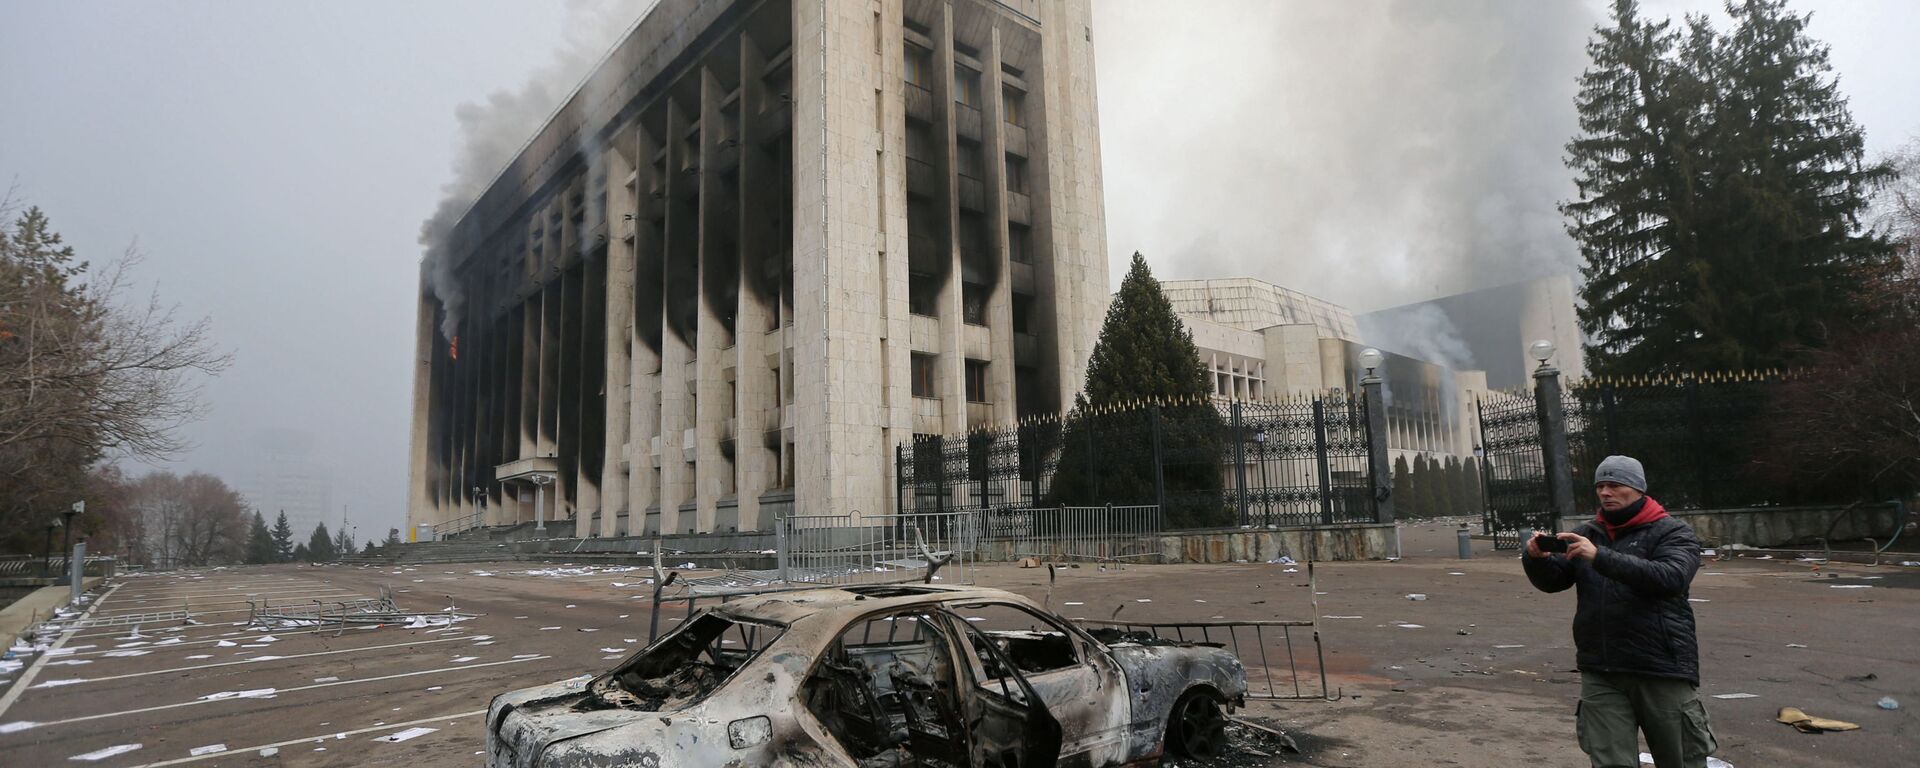 Сгоревший автомобиль перед зданием мэрии, которое было подожжено во время протестов в Алматы - Sputnik Lietuva, 1920, 10.01.2022